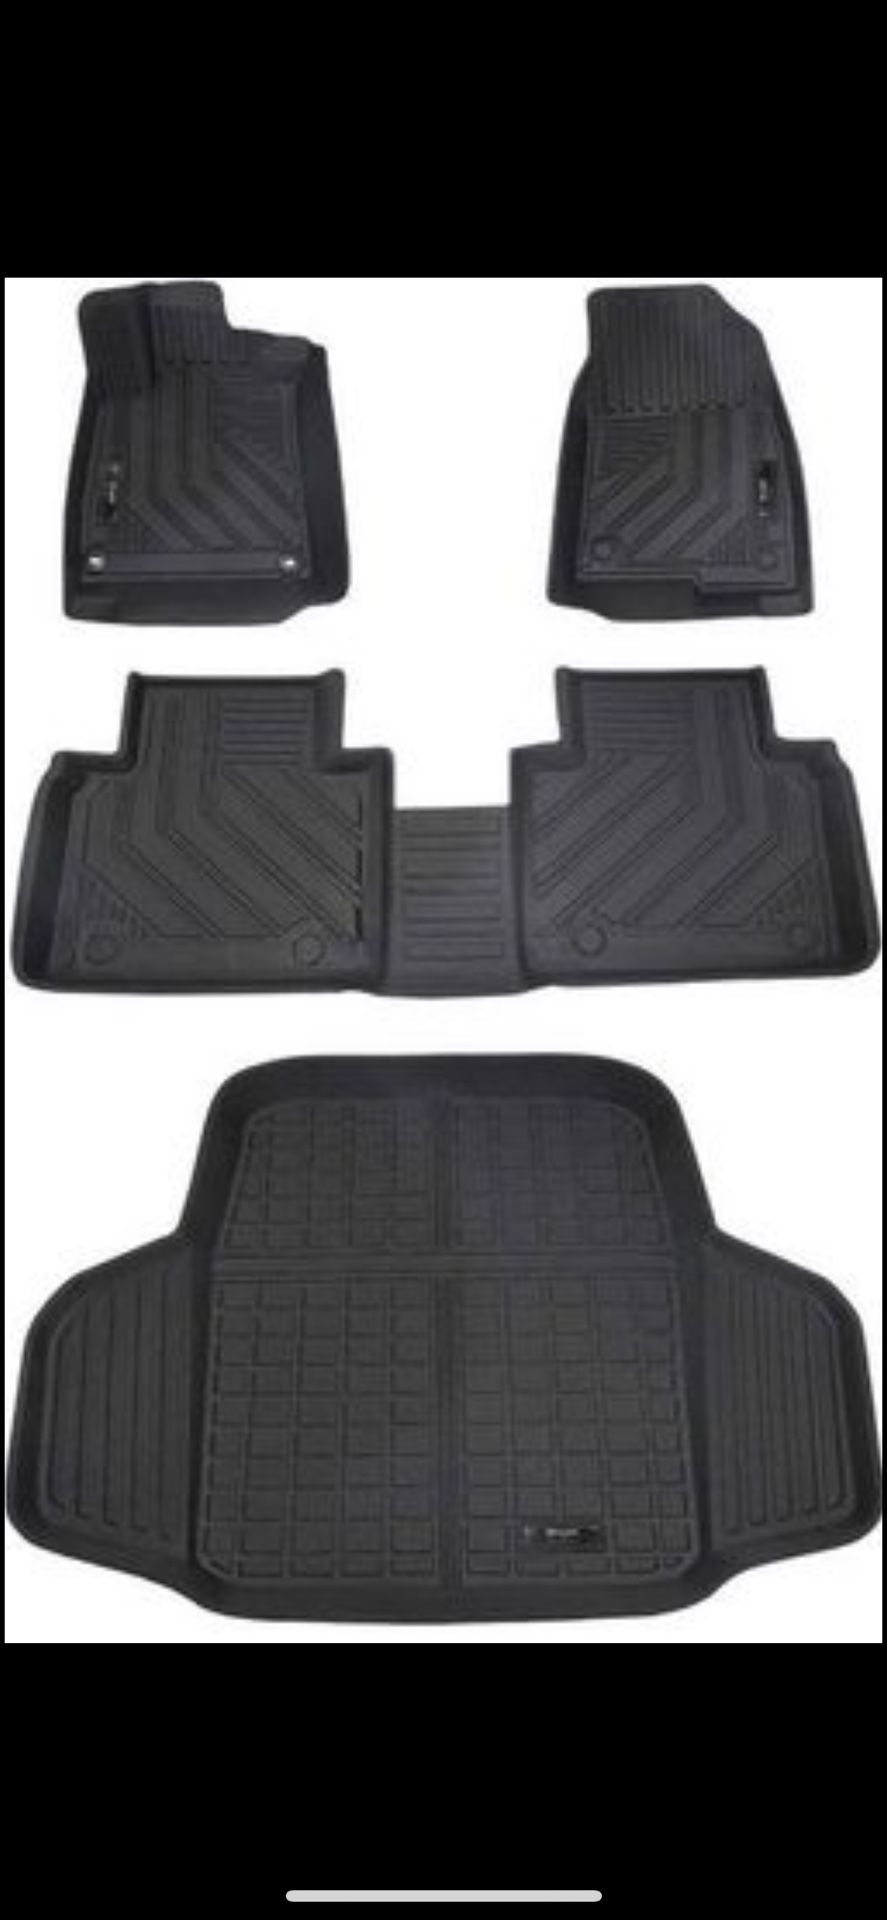 Shvgen Car Floor Mats & Cargo Trunk Liners Compatible for Honda Accord (Retails $175